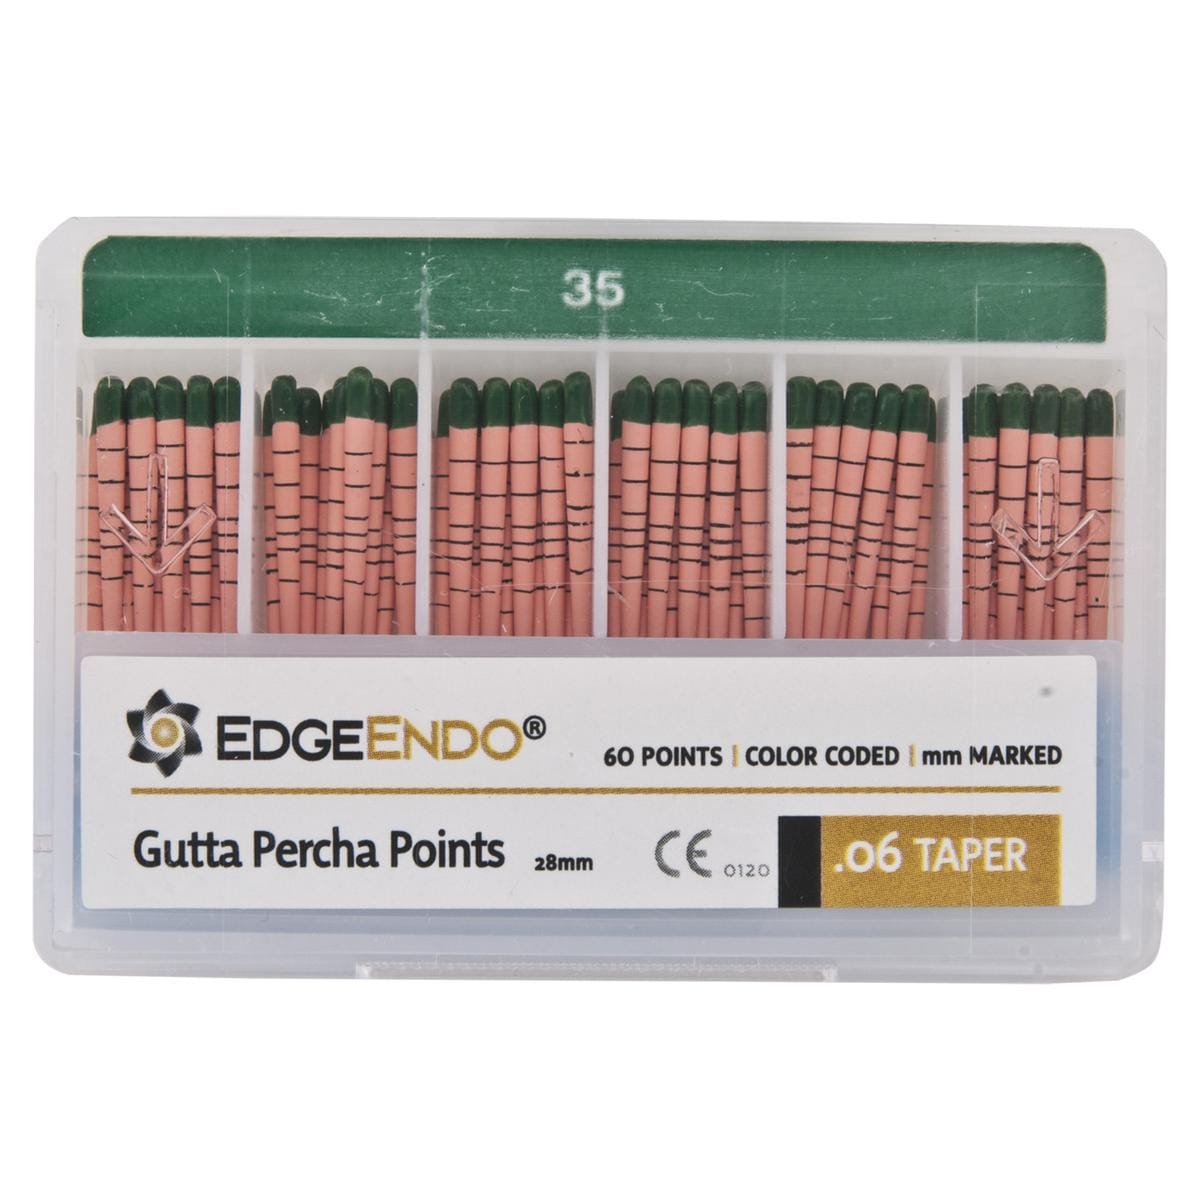 EdgeFile X7 Guttapercha points - Taper 06, ISO 35 (groen) 60 stuks